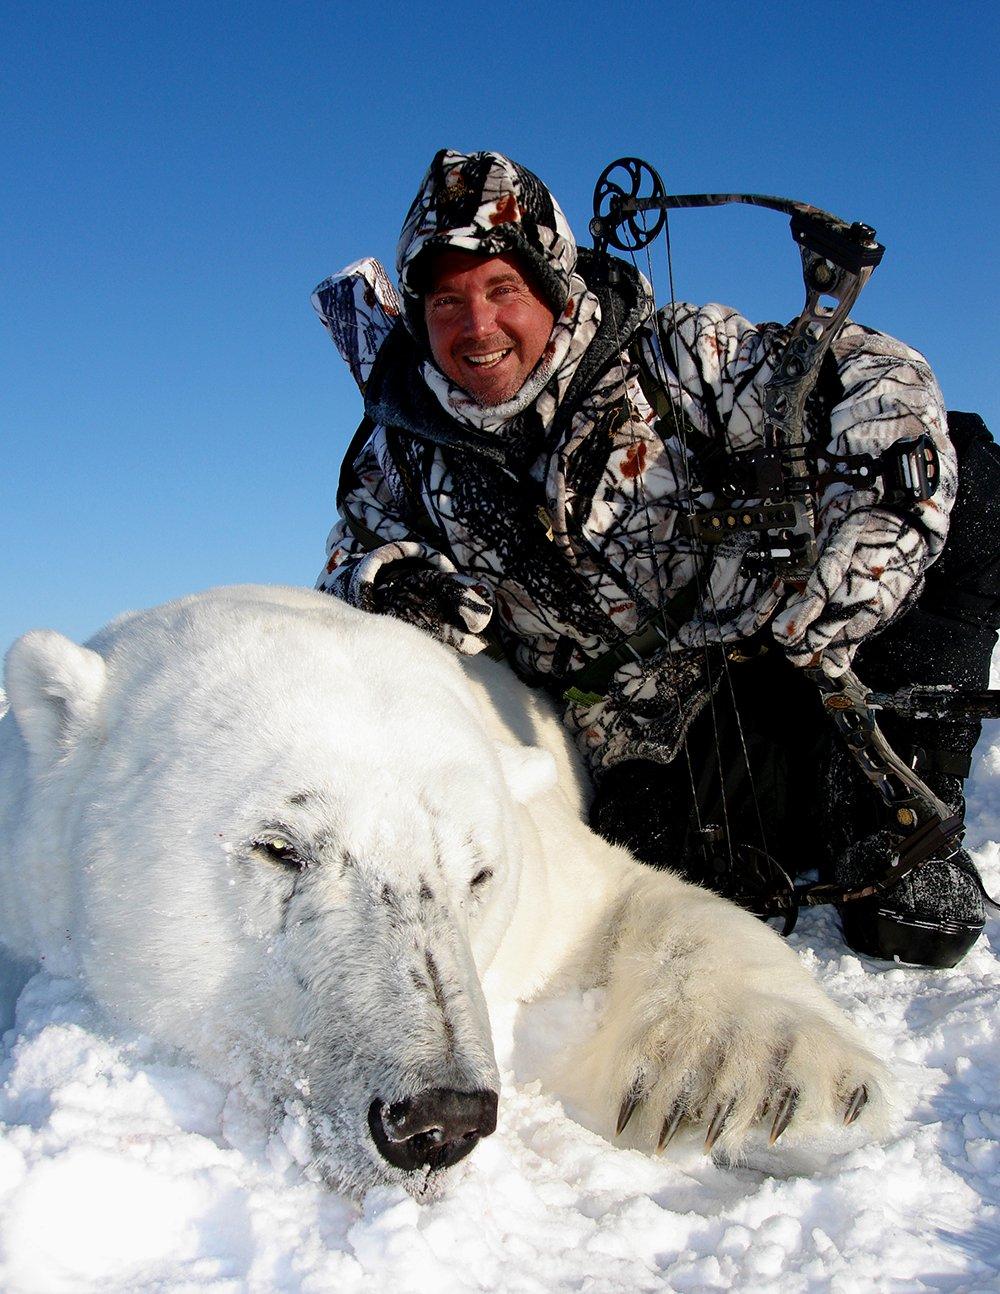 Tom Miranda and his massive polar bear. Image courtesy of Tom Miranda